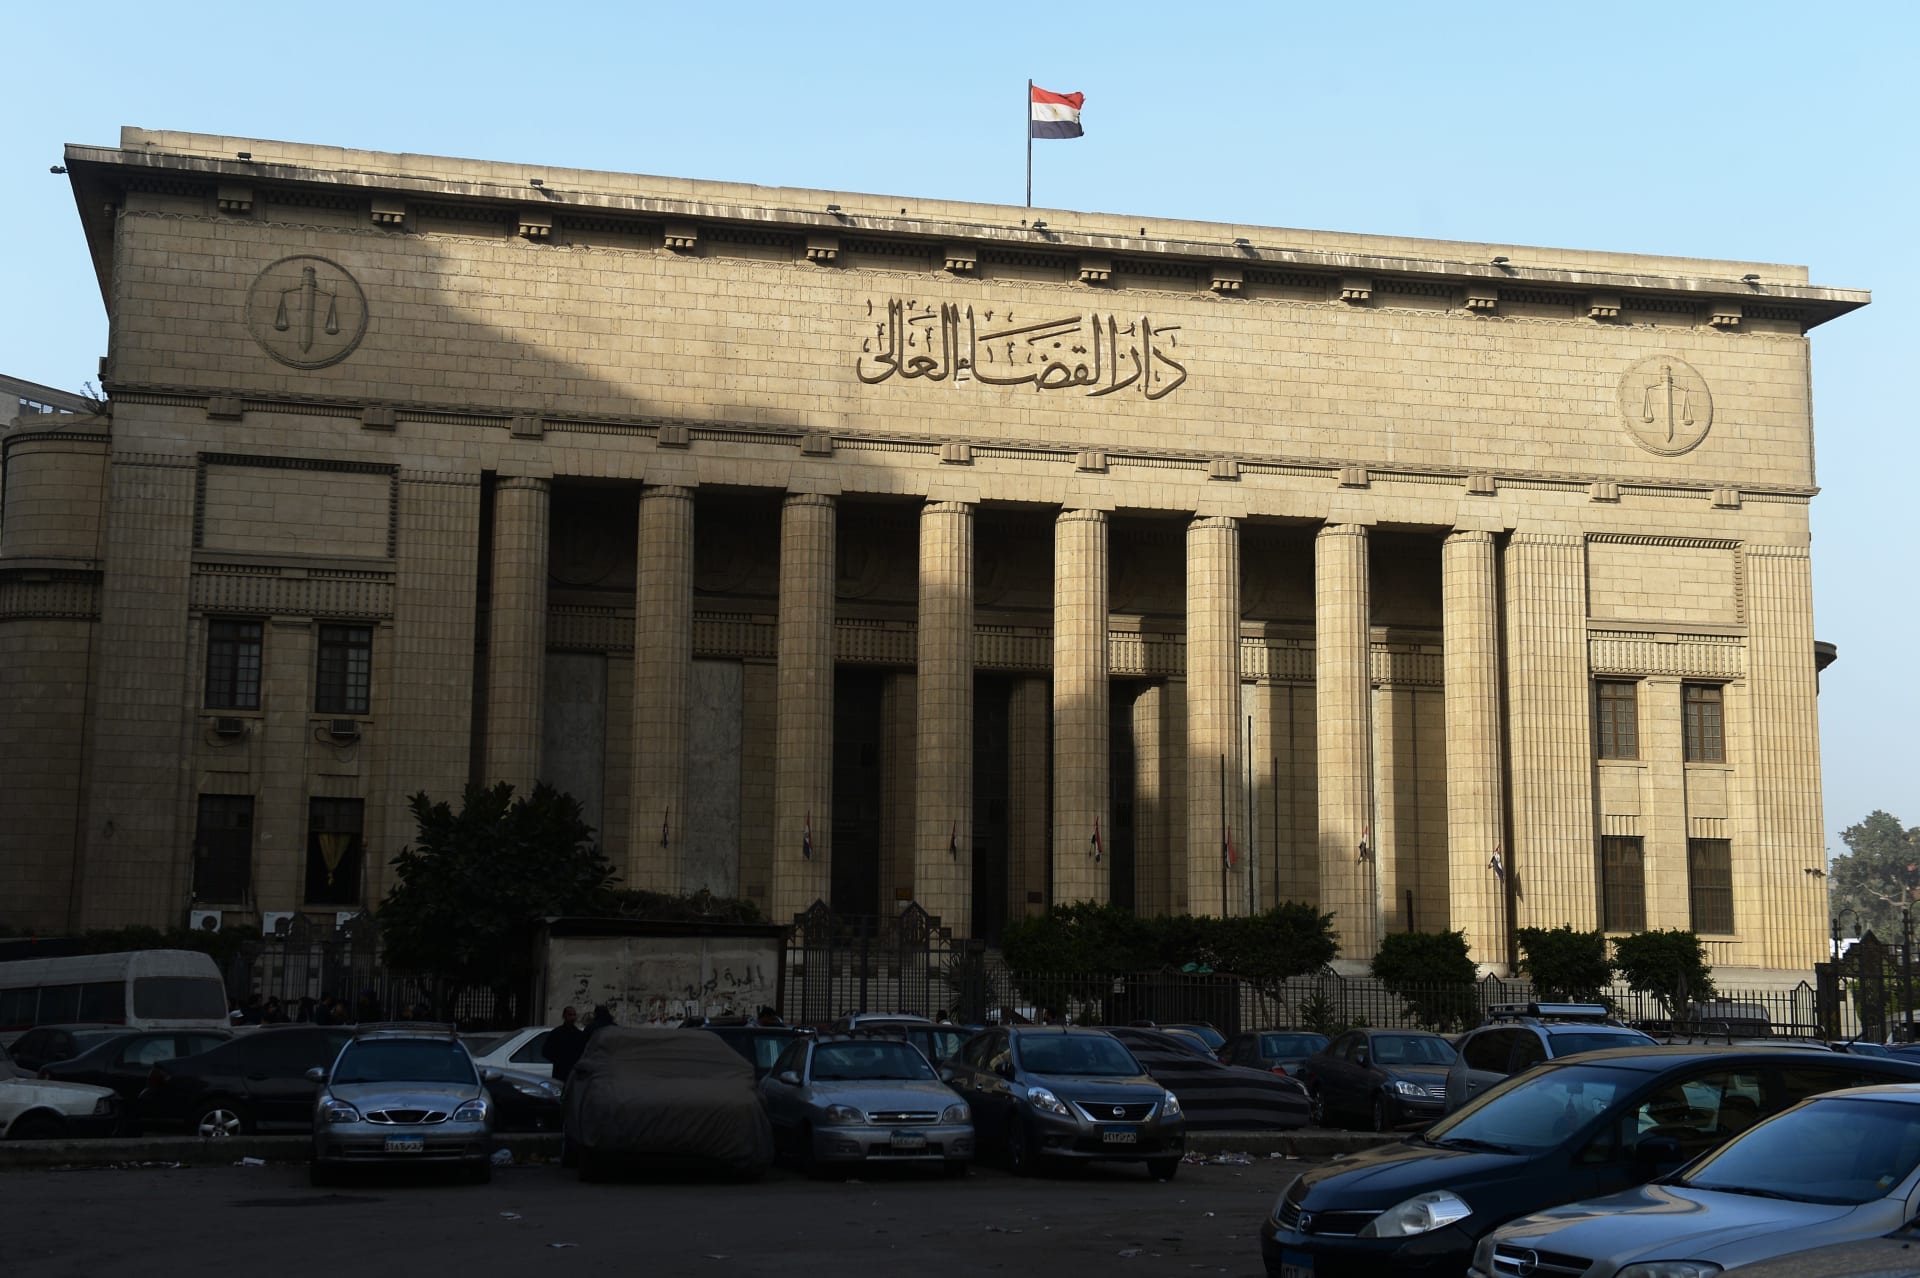 مصر: قطب إعلام سابق متهم بالاتجار بالبشر والاعتداء الجنسي على يتيمات.. ومسؤولة في حالة "صدمة"